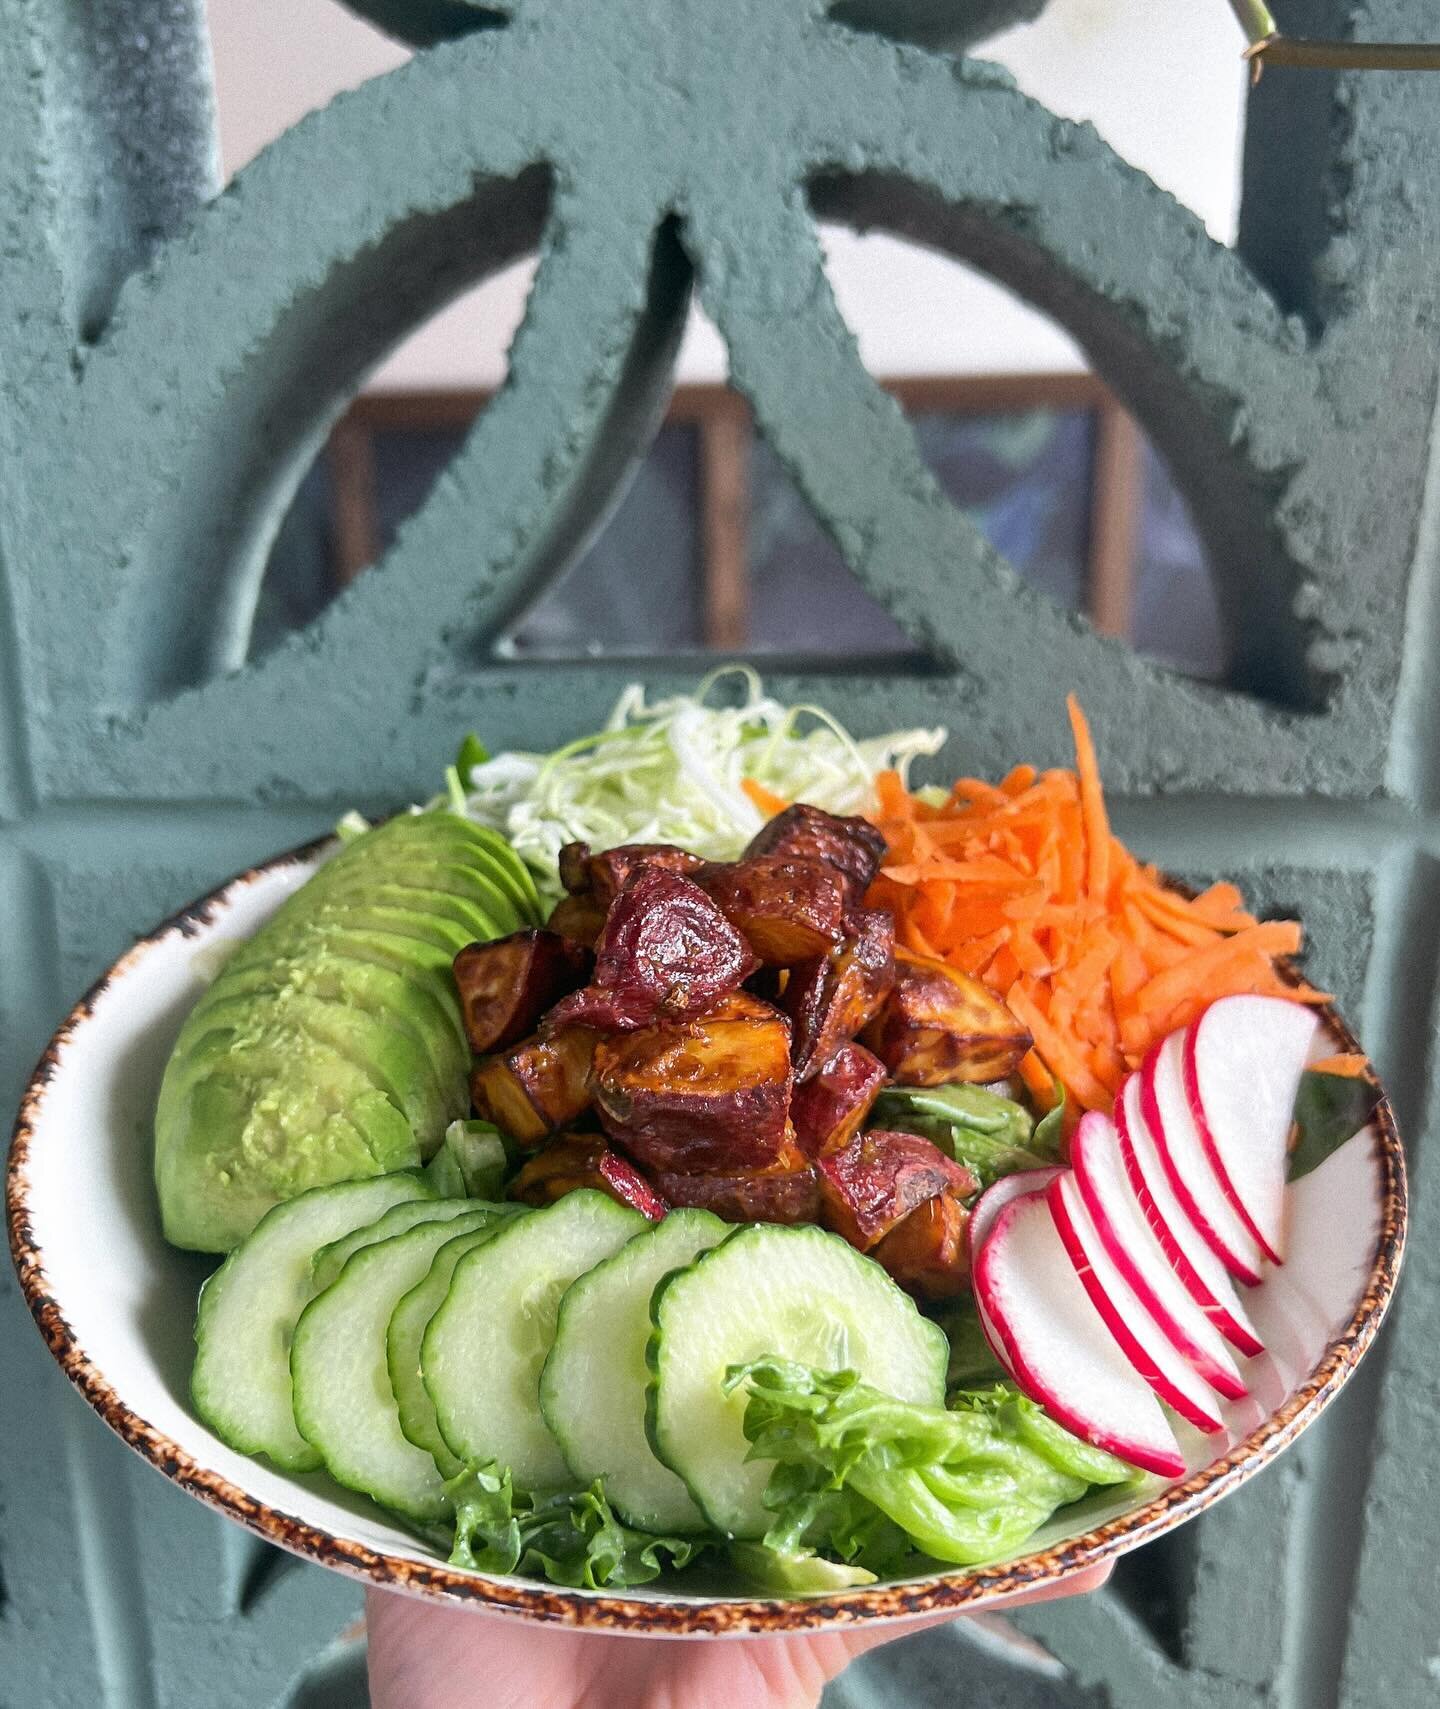 NEW WILD NASHVILLE SALAD 🥗 

Hydrogreens +  Thai basil, shredded cabbage, shredded carrot, cucumber, radish, avocado, fried sweet potato, Lemon Ginger dressing 
.
.
.
#plantbased #vegan #restaurant #nashville #nashvillerestaurant